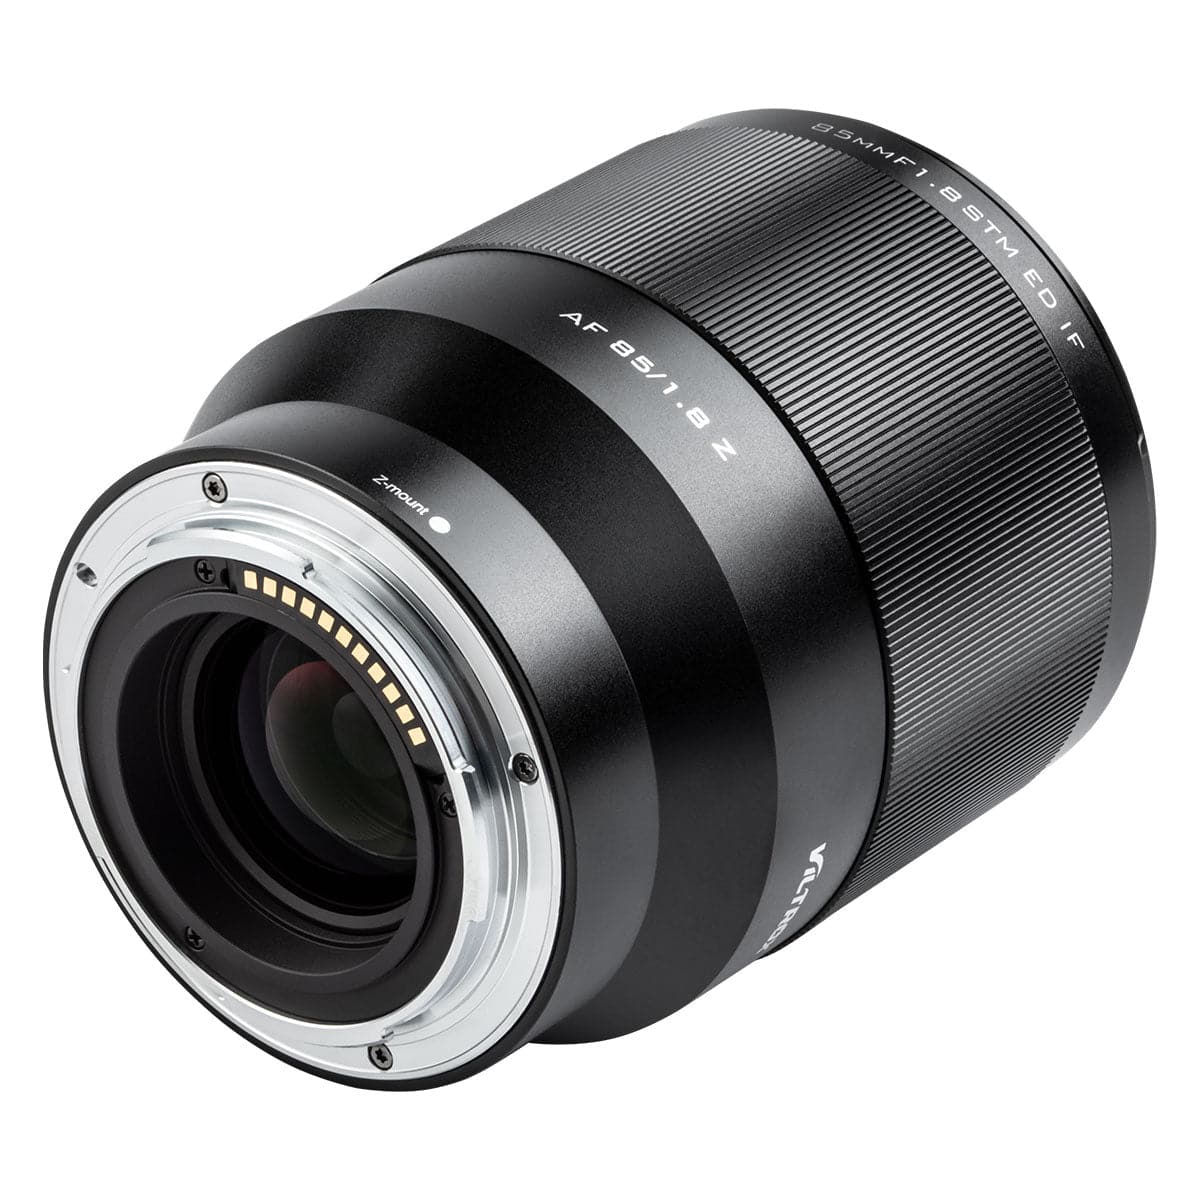 Viltrox AF 85mm F1.8 II Full Frame Lens For Nikon Z-Mount